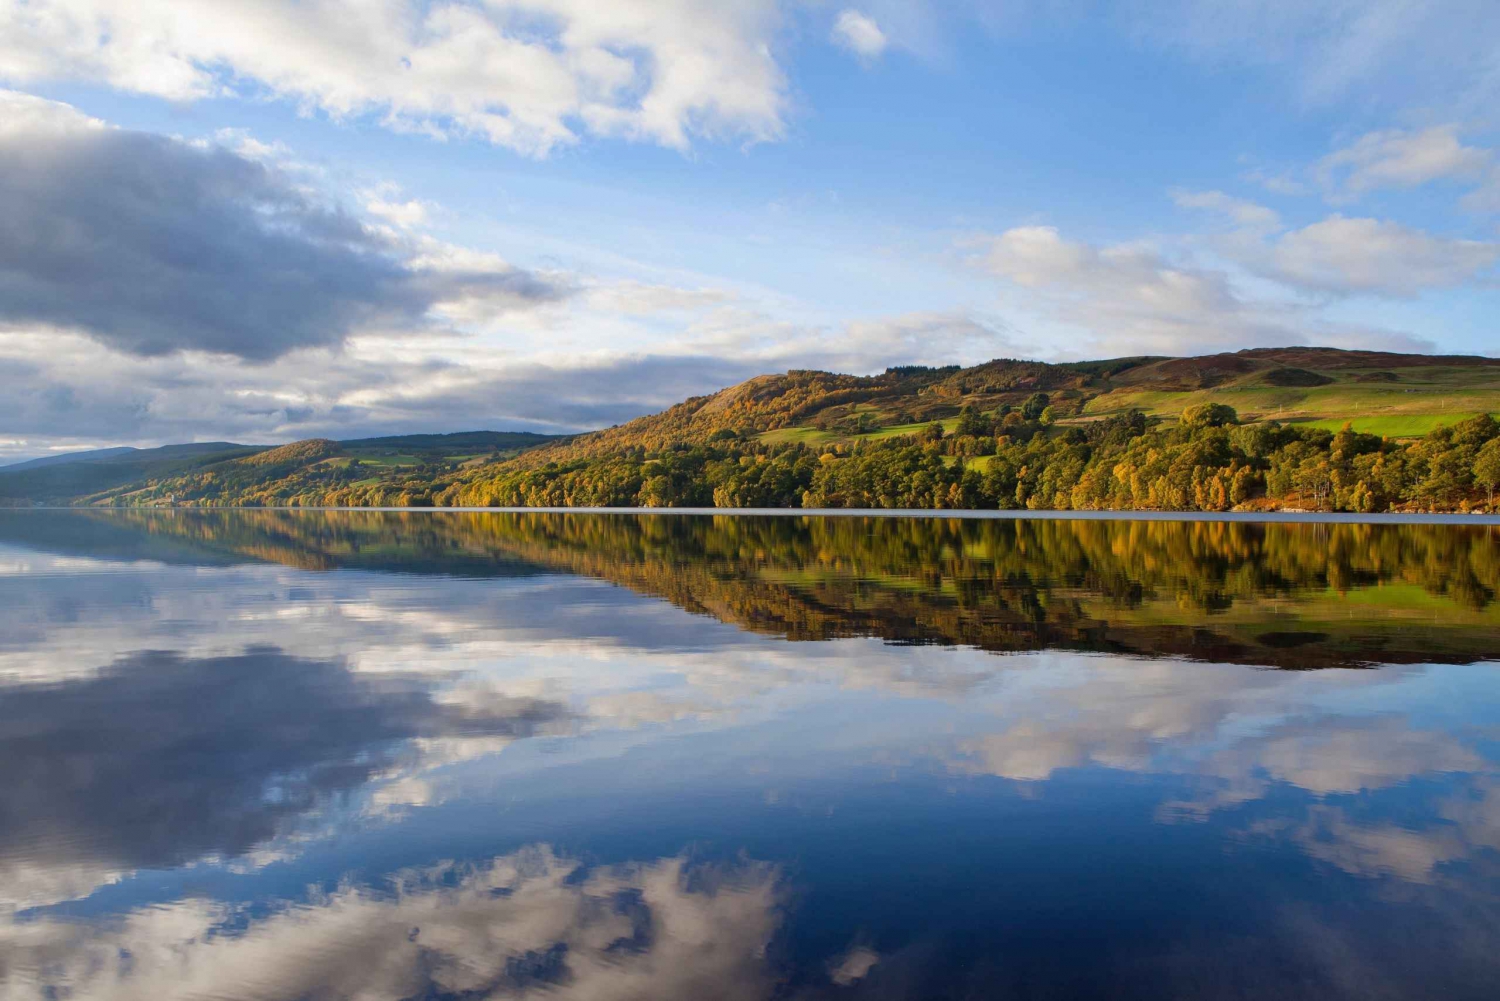 Von Edinburgh aus: Loch Ness und The Highlands Tour mit Kreuzfahrt